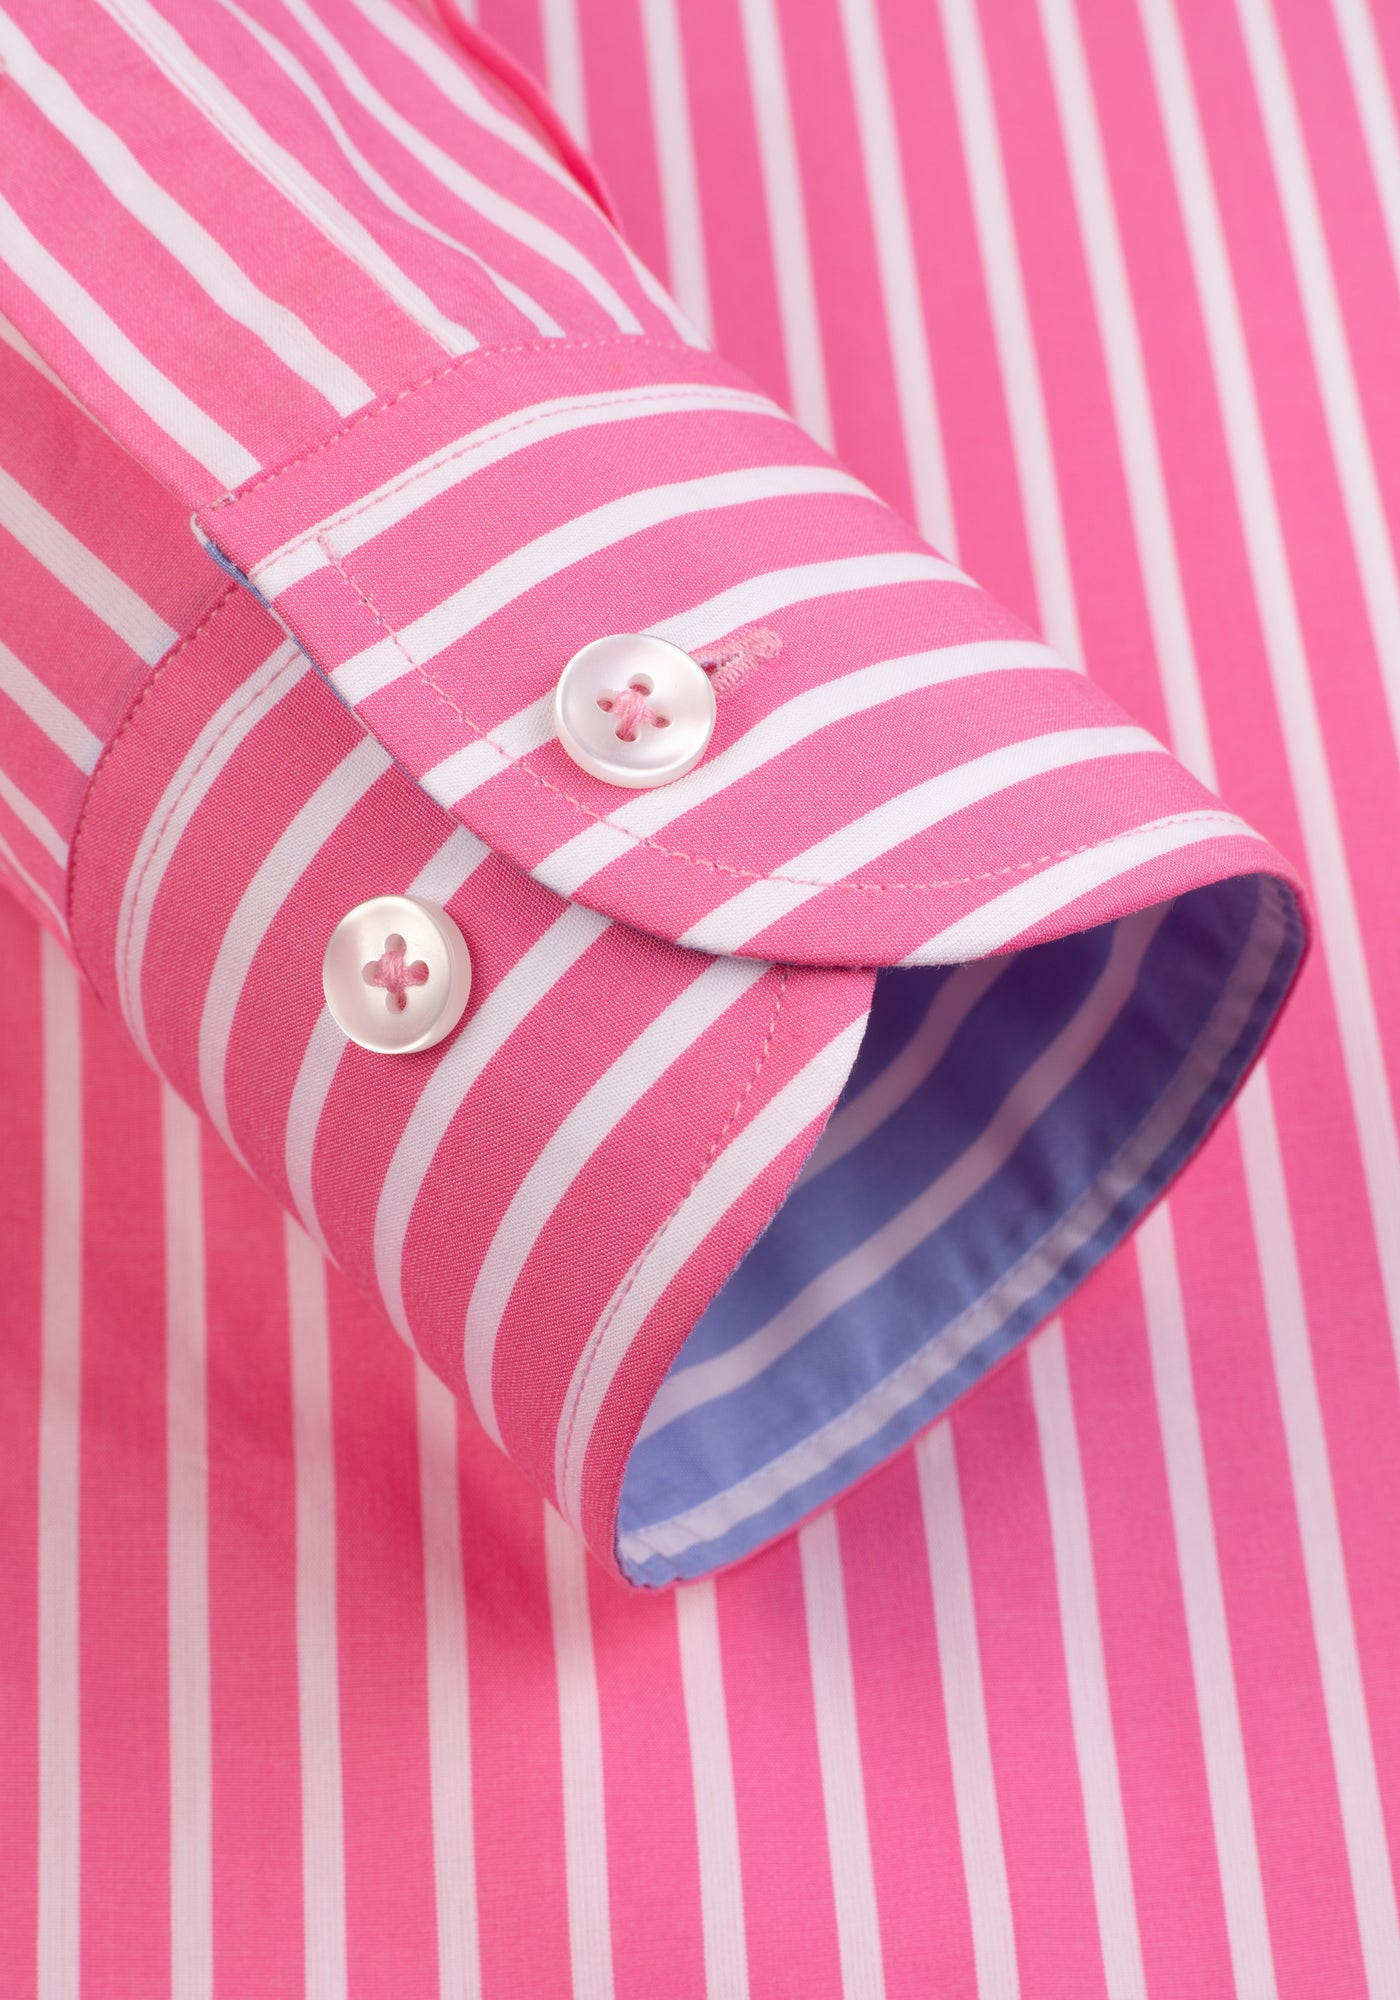 French Pink Stripe Tencel Cotton Shirt